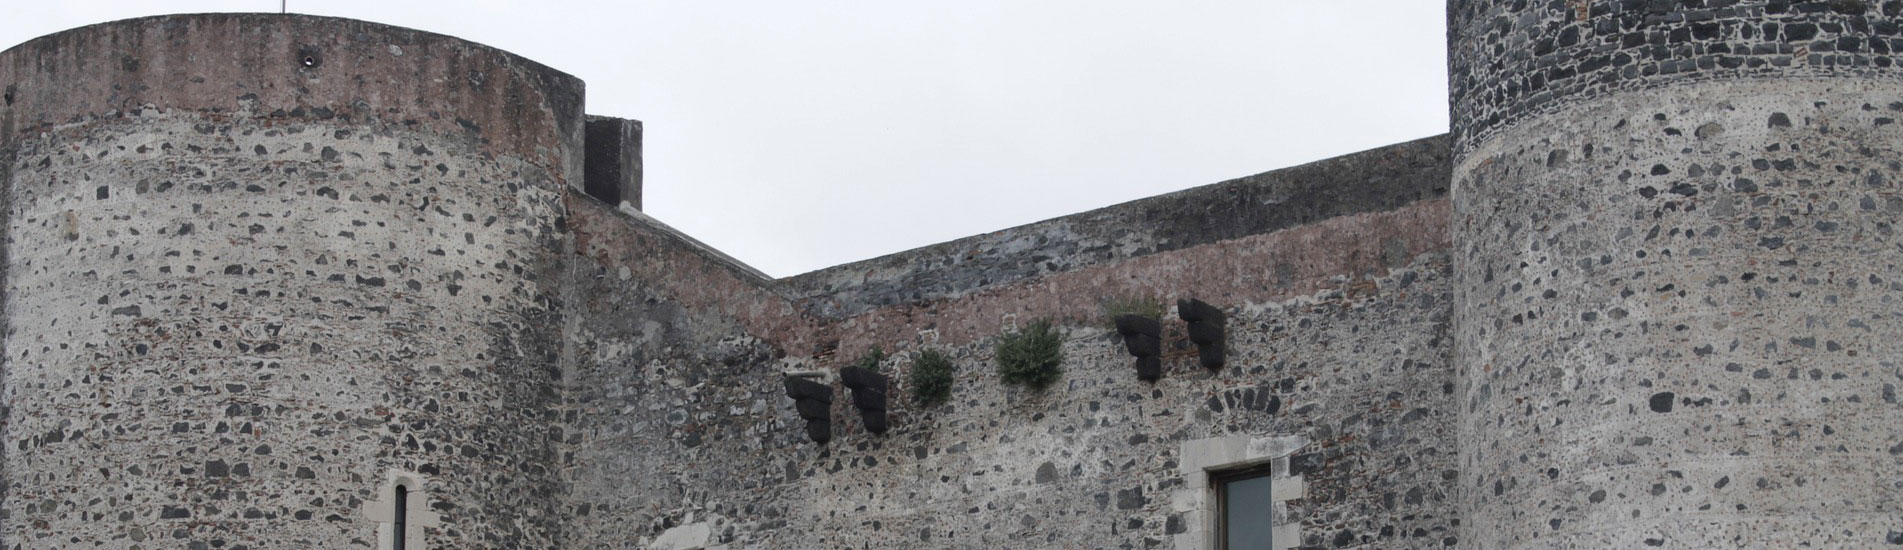 Castello Ursino - Catania